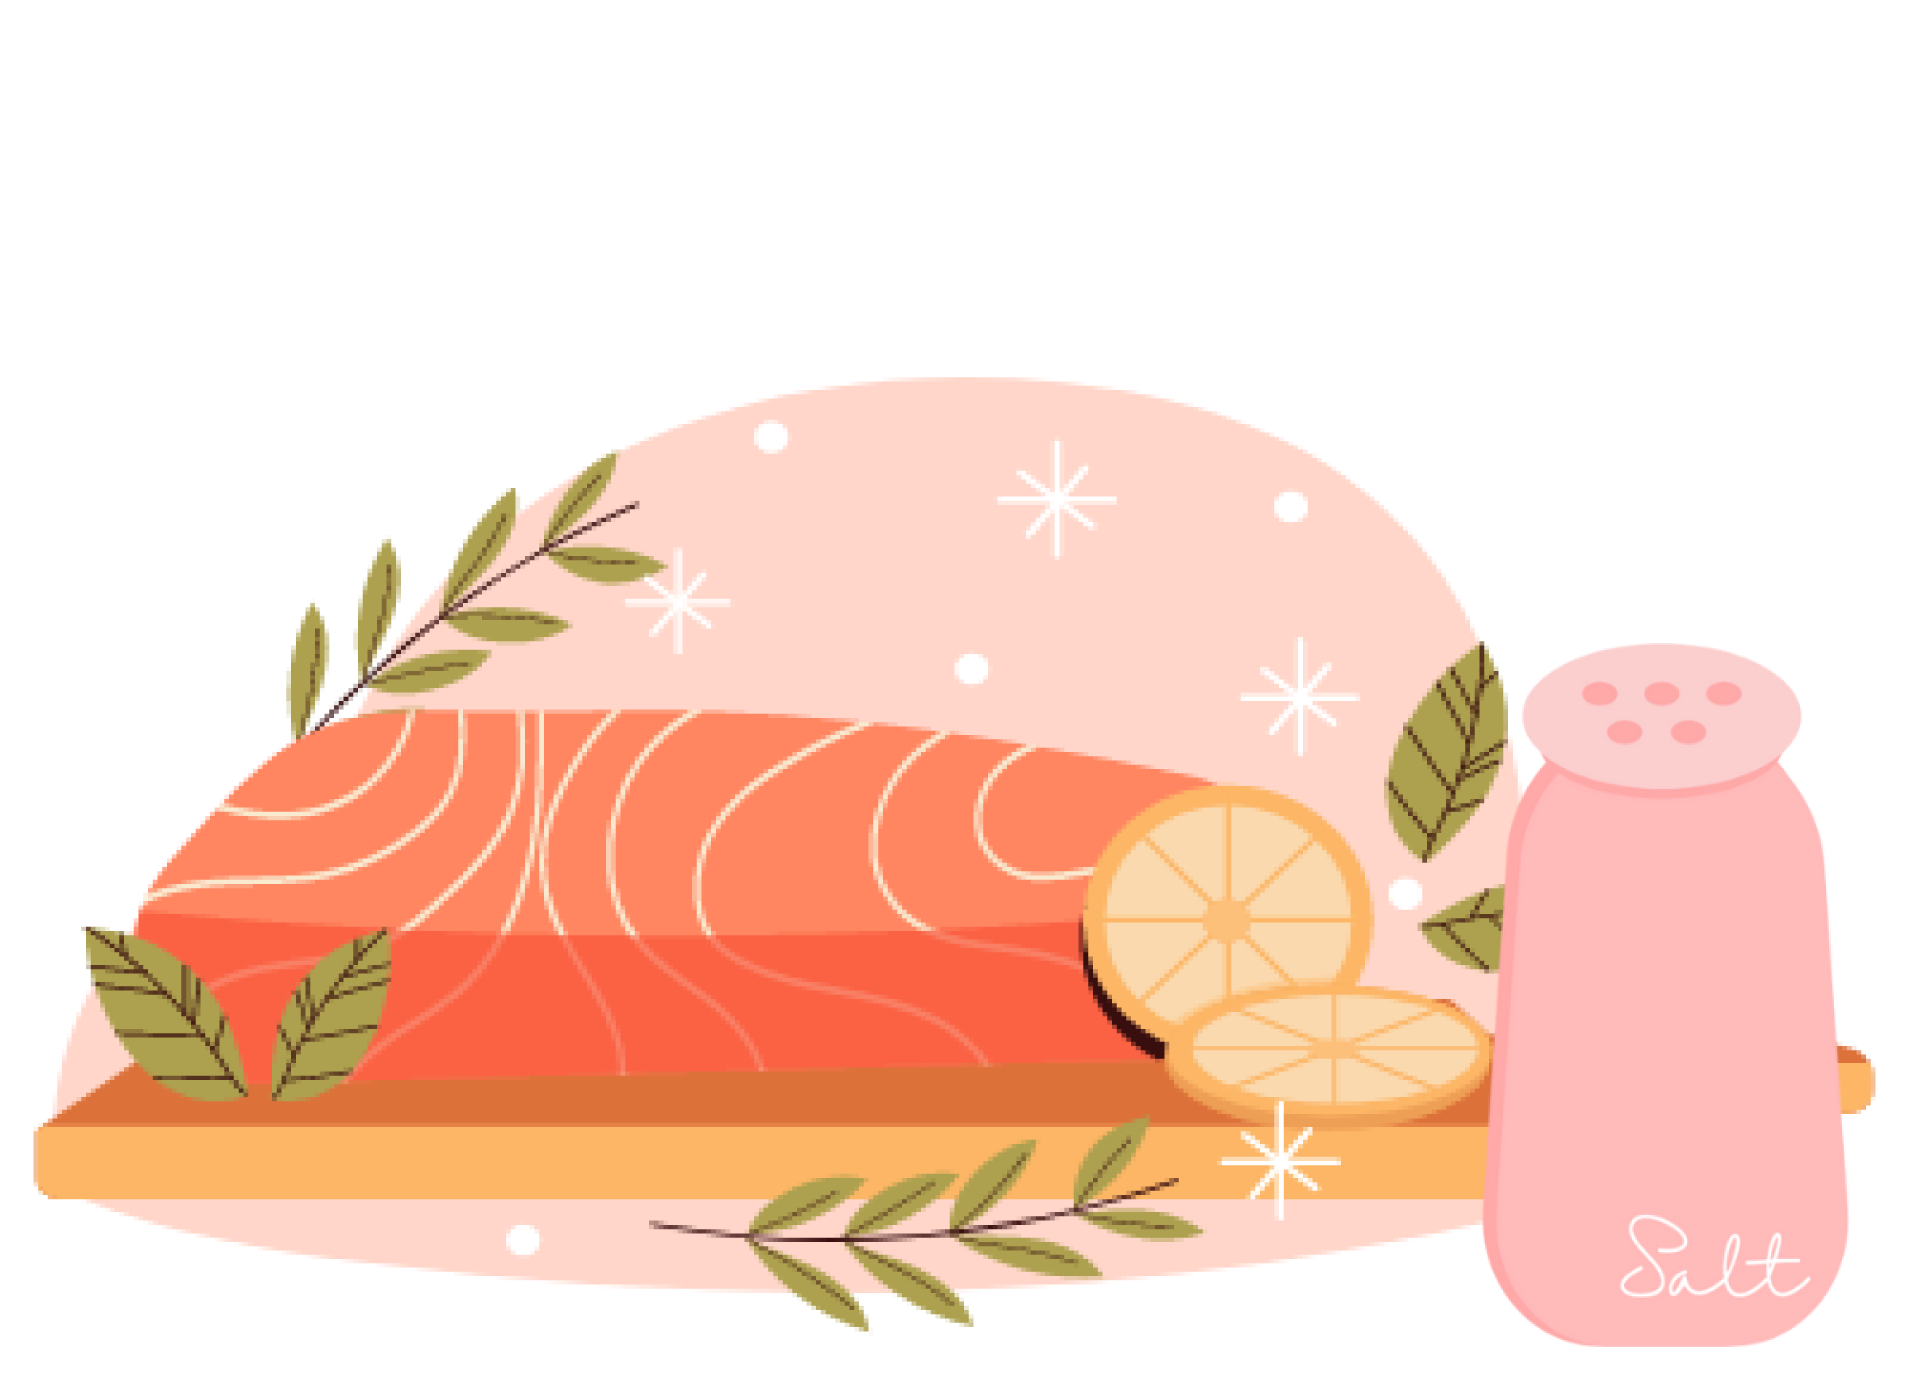 pink salt recipes, himalayan pink salt recipes, recipes with pink salt, recipes for pink himalayan salt, pink himalayan salt scrub recipes, recipes using himalayan pink salt, pink himalayan bath salt recipes